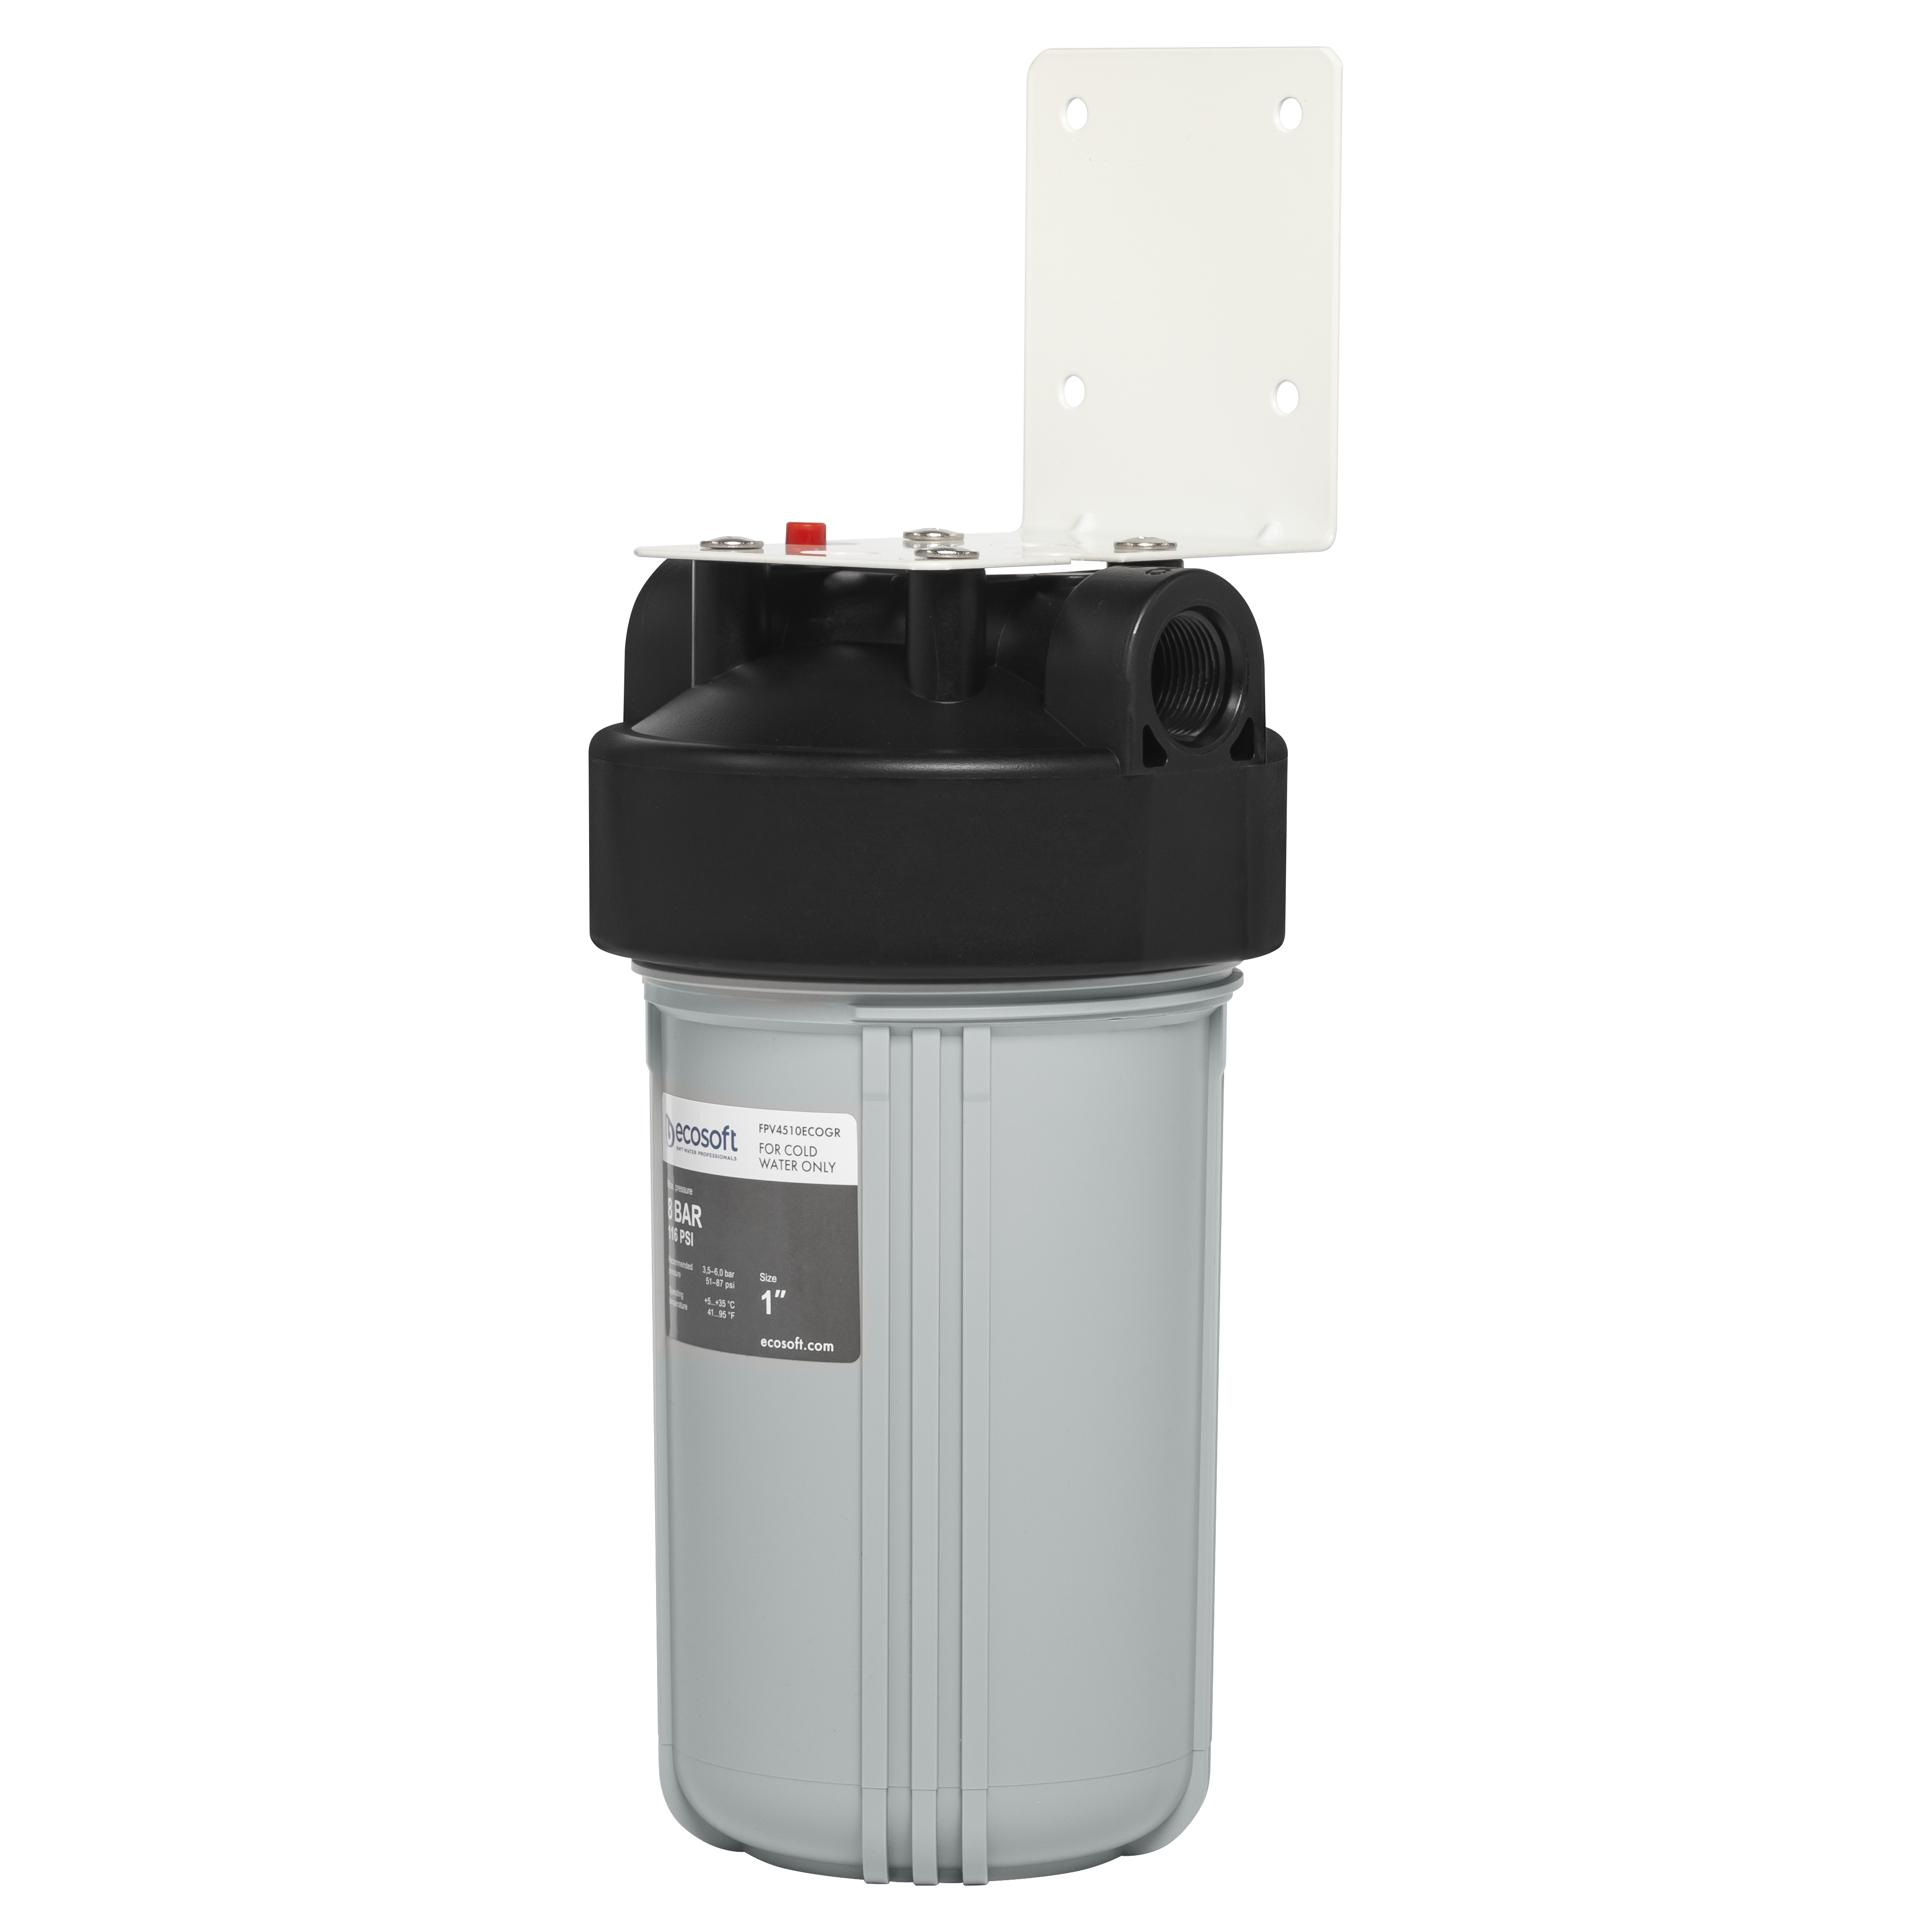 Характеристики фильтр для очистки воды от ржавчины и песка Ecosoft BB10 1" (FPV4510ECOGR)